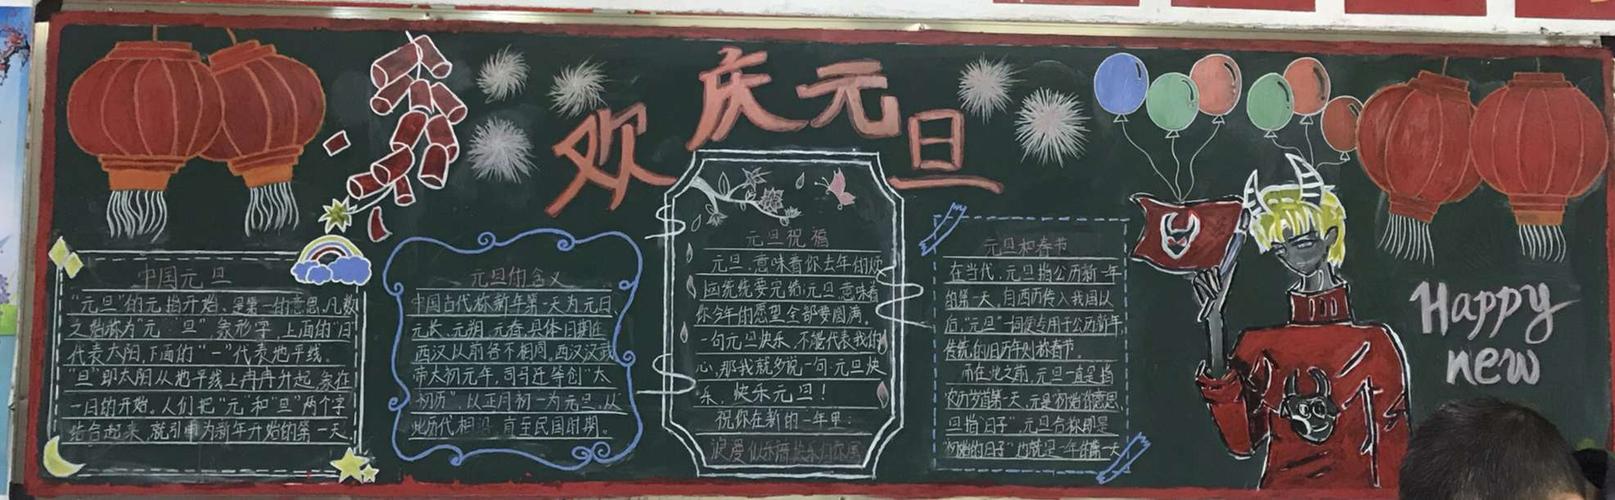 海丰县梅峰中学组织开展迎新年庆元旦黑板报评比活动